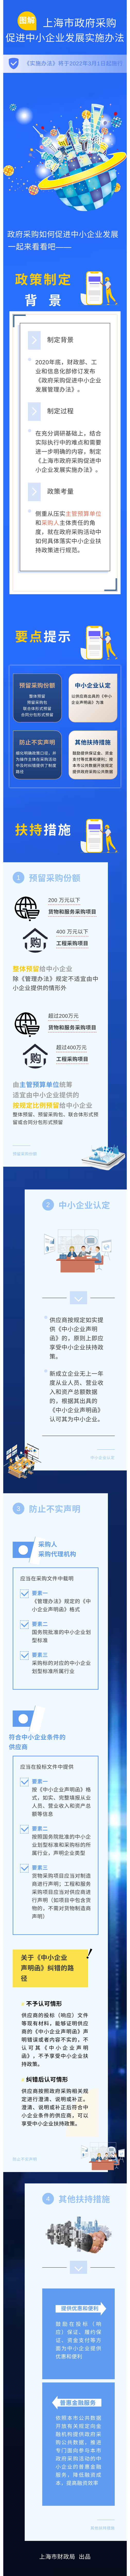 上海市政府采购促进中小企业发展实施办法图解.jpg